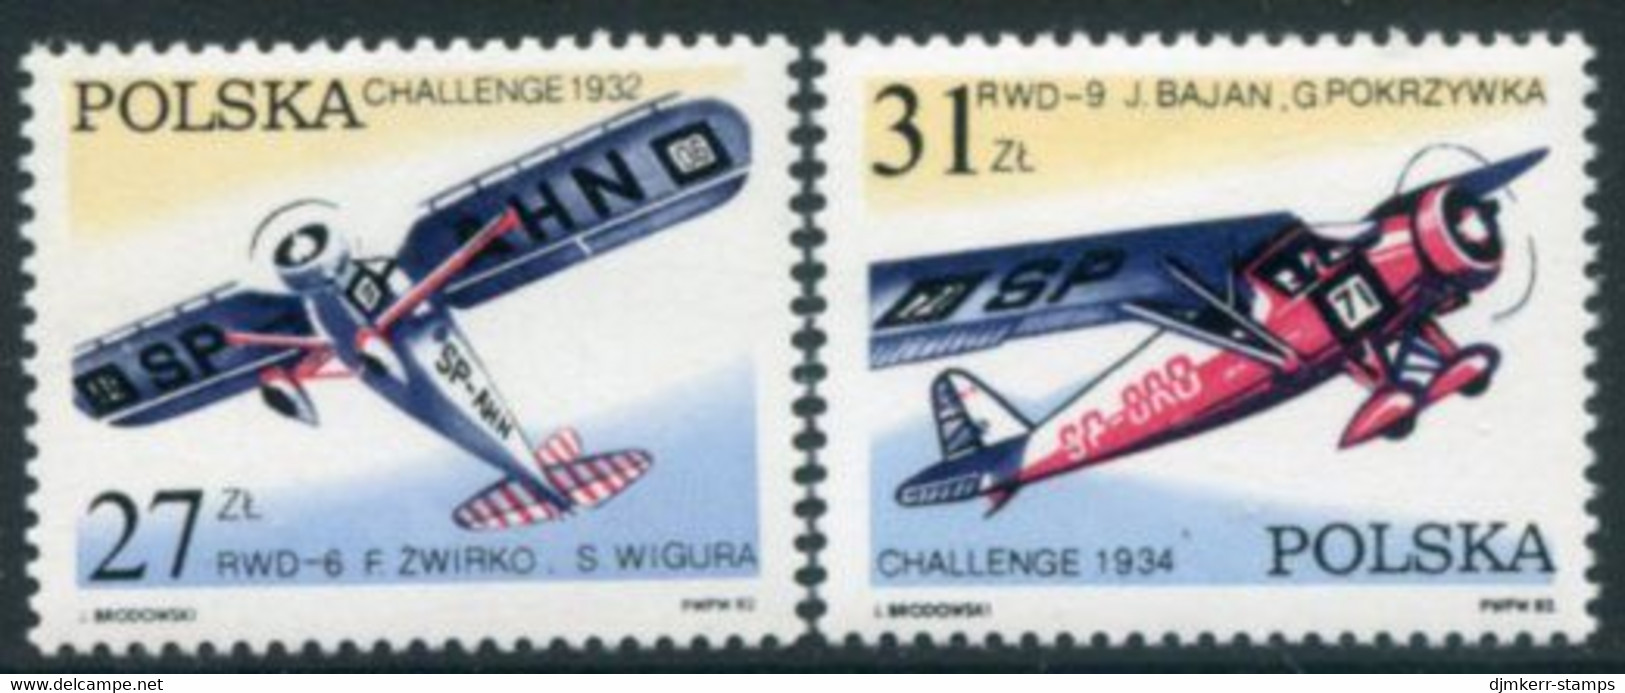 POLAND 1982 50th Anniversary Of Challenge Flight MNH / **.  Michel 2806-07 - Ungebraucht